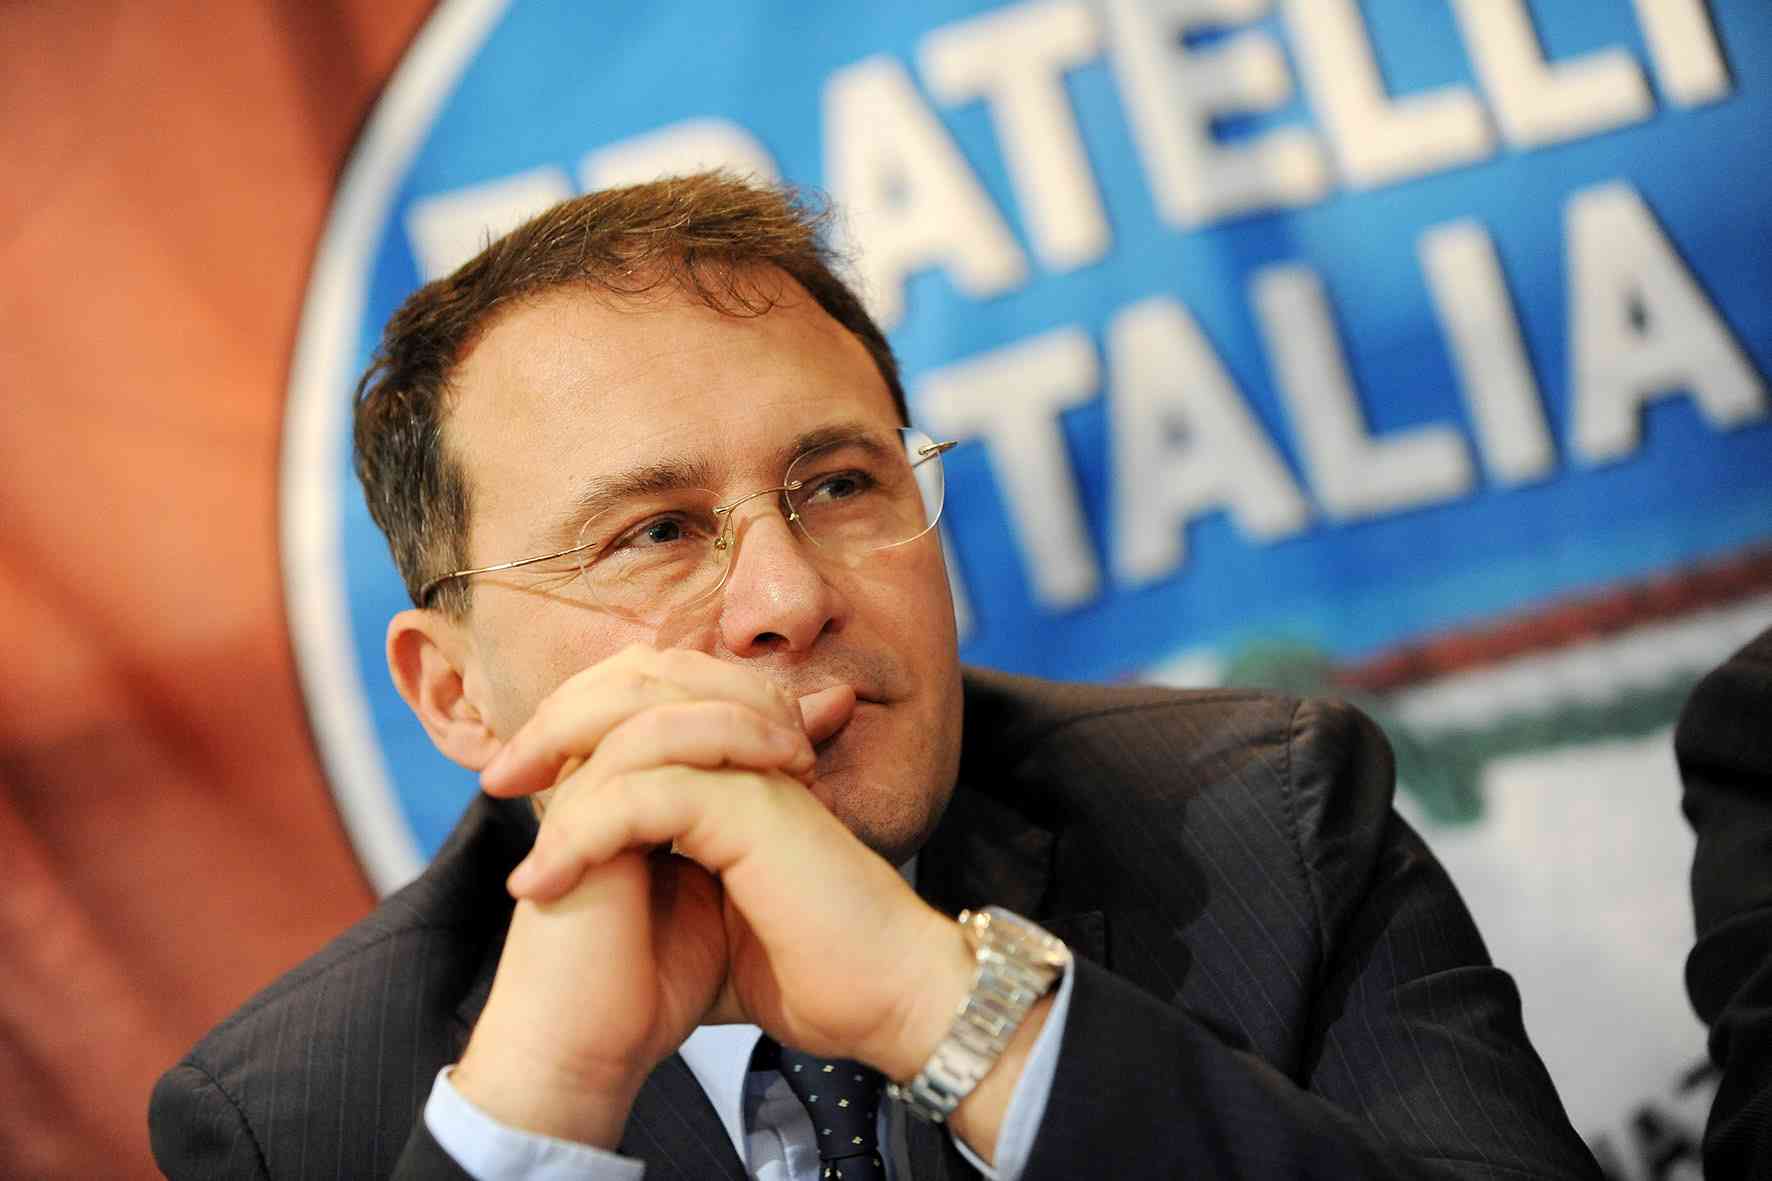 Roma: FdI, on. Cirielli “Ottima scelta di Meloni, Schiano commissario provinciale a Napoli”